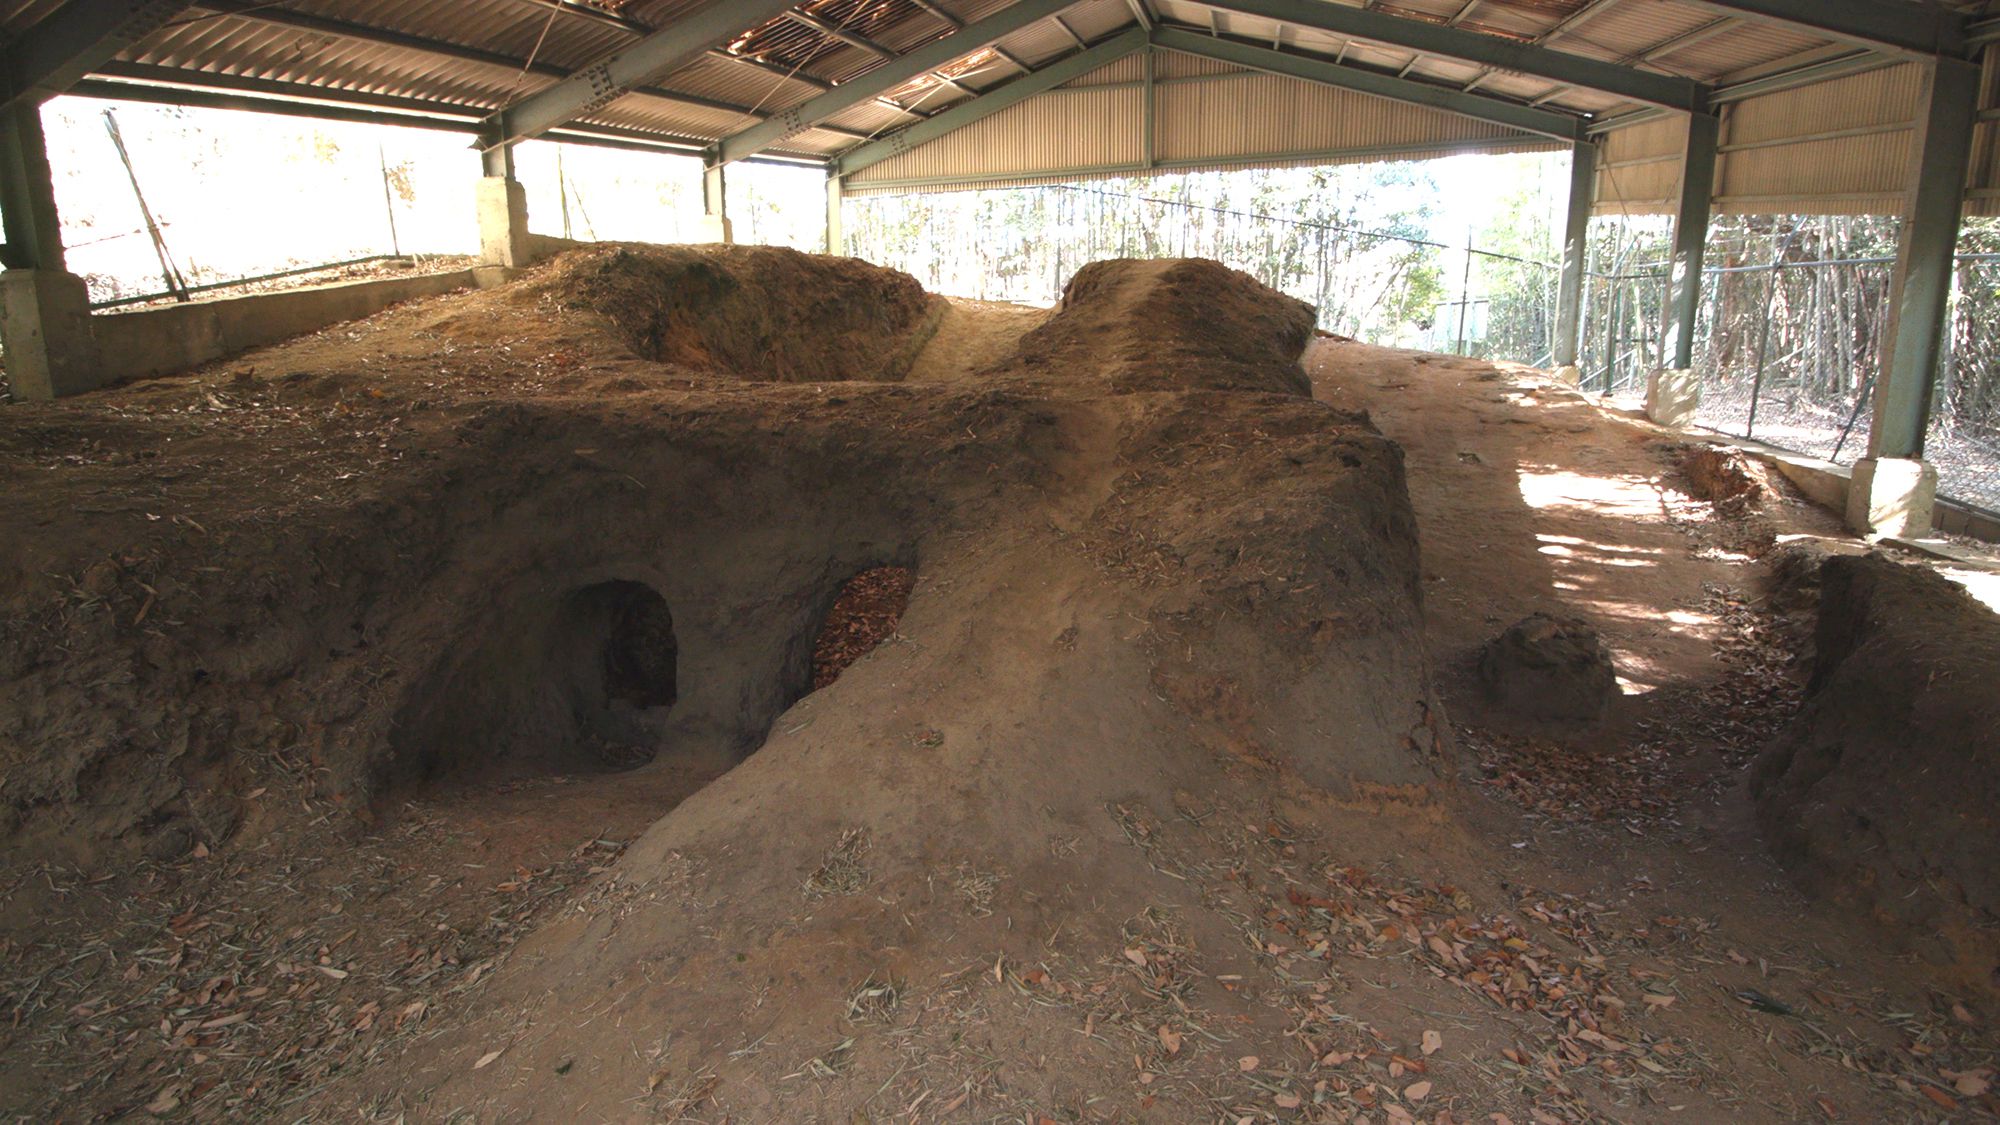 常滑的笼池古窑。它是平安时代末期的窖窑，在坡面上经过深挖建造而成。